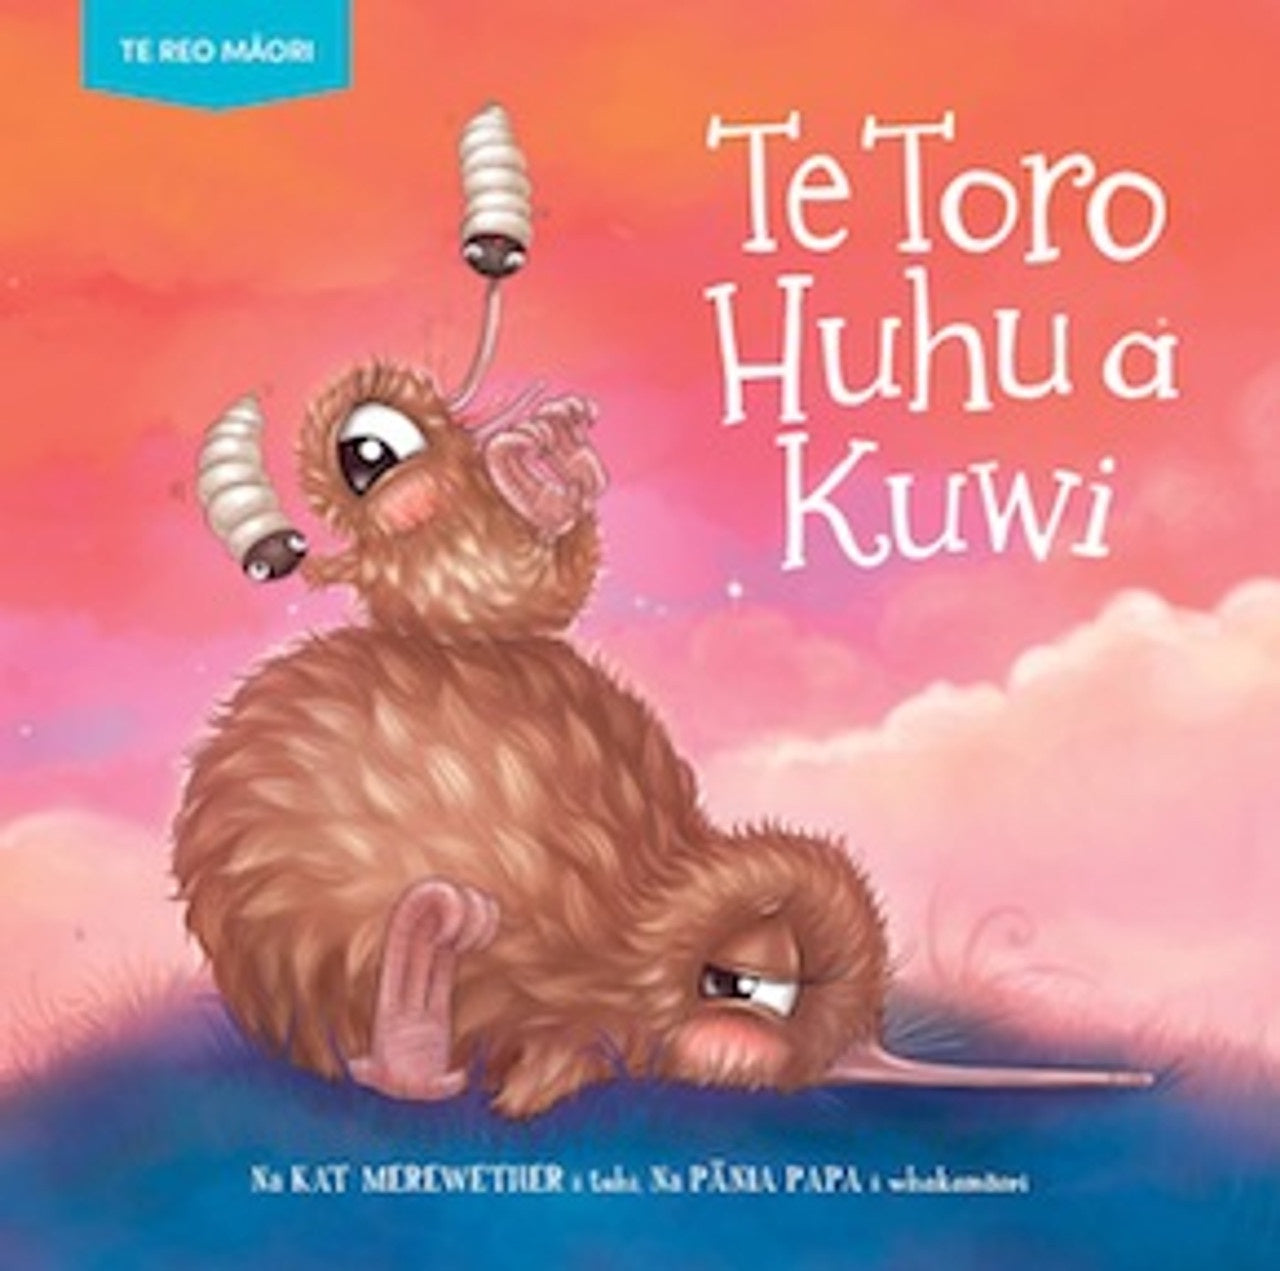 Book - Te Toro Huhu a Kuwi